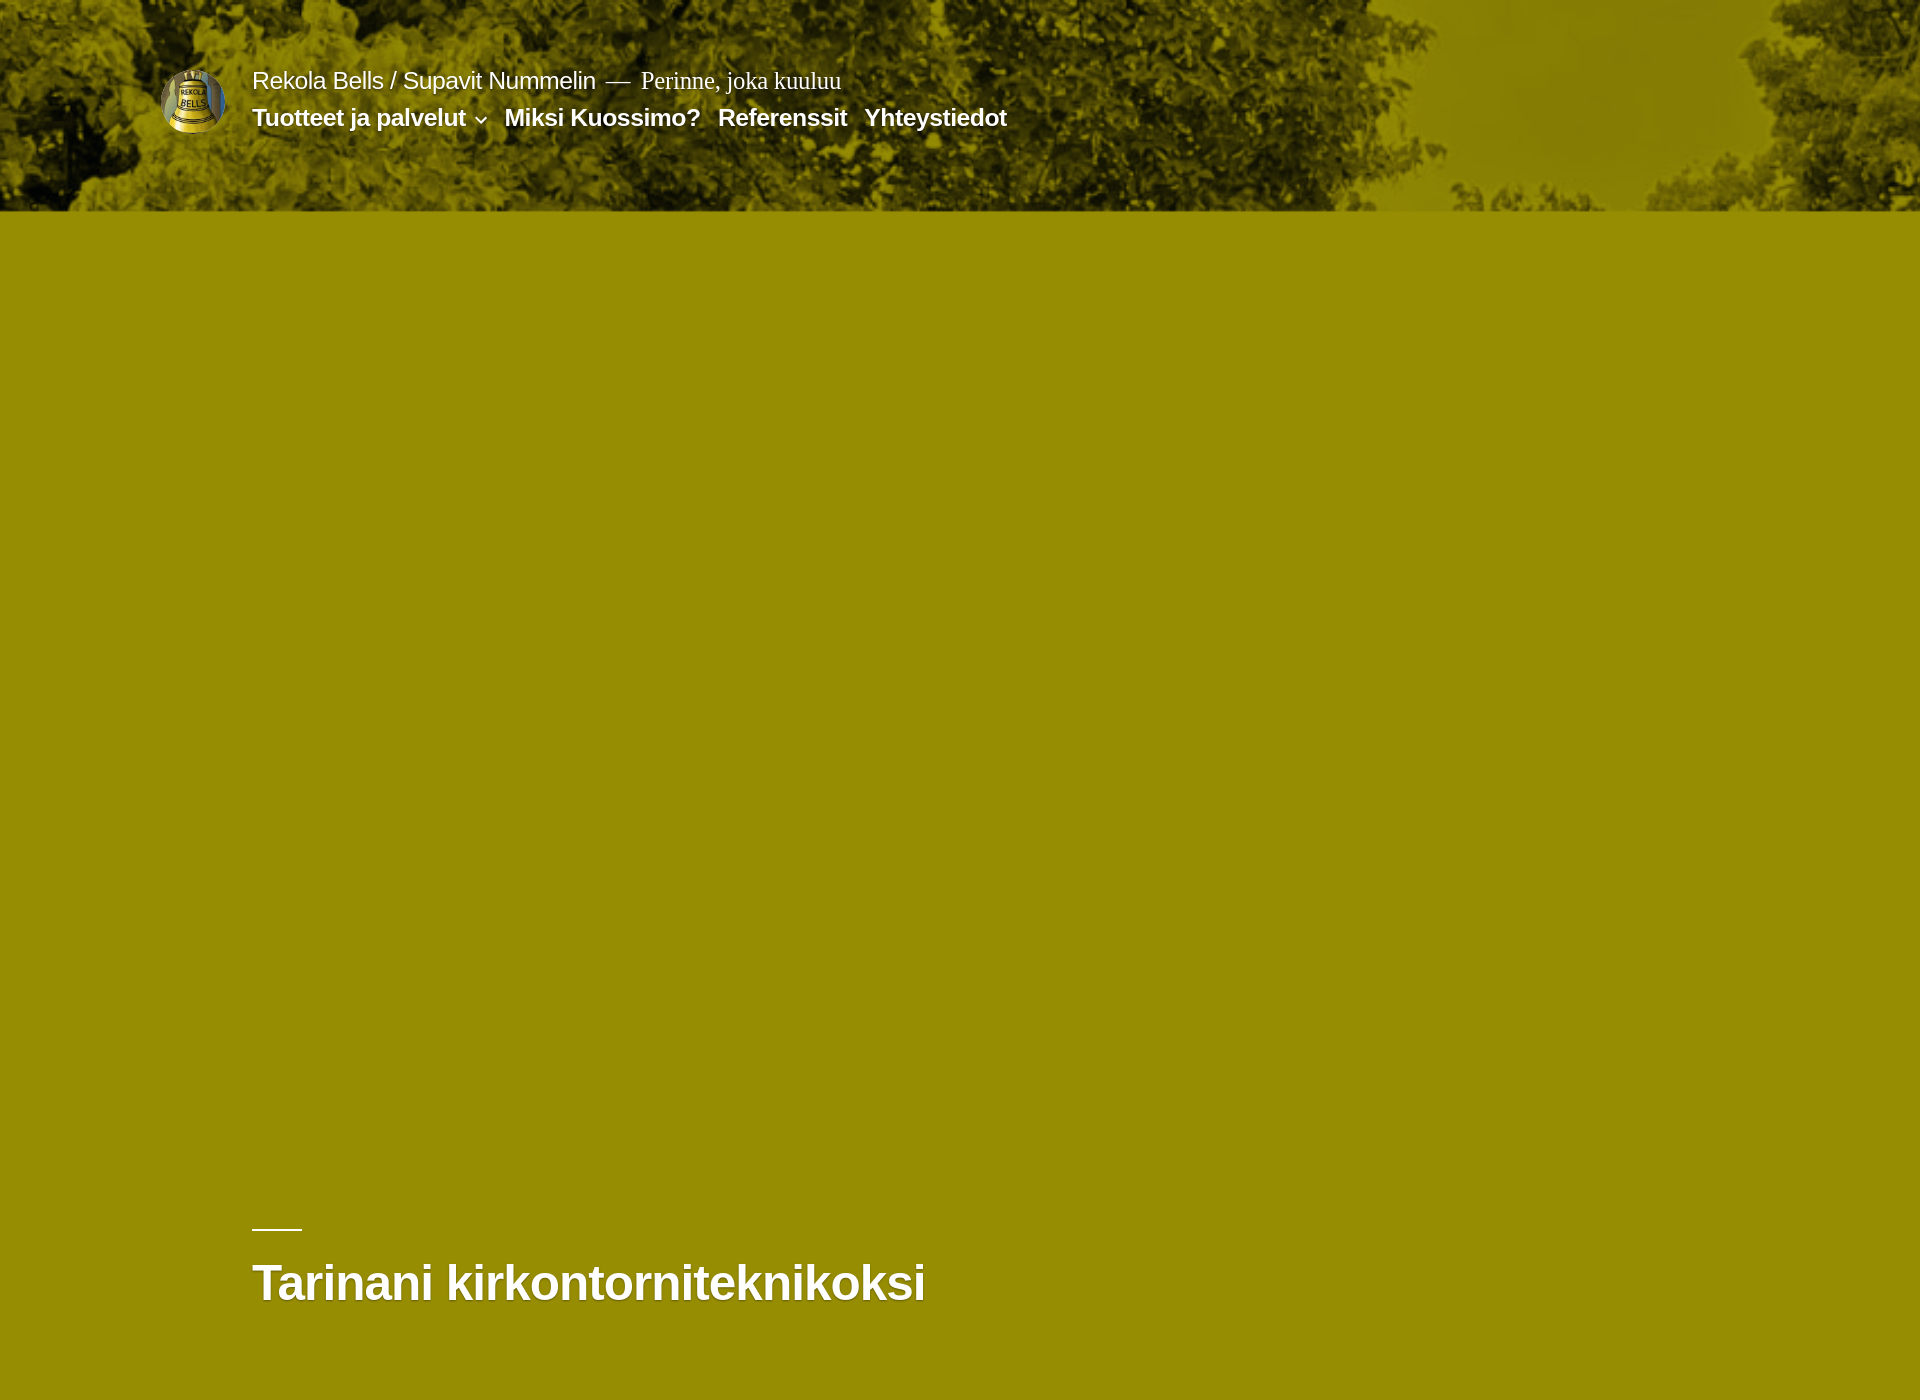 Skärmdump för rekolabells.fi